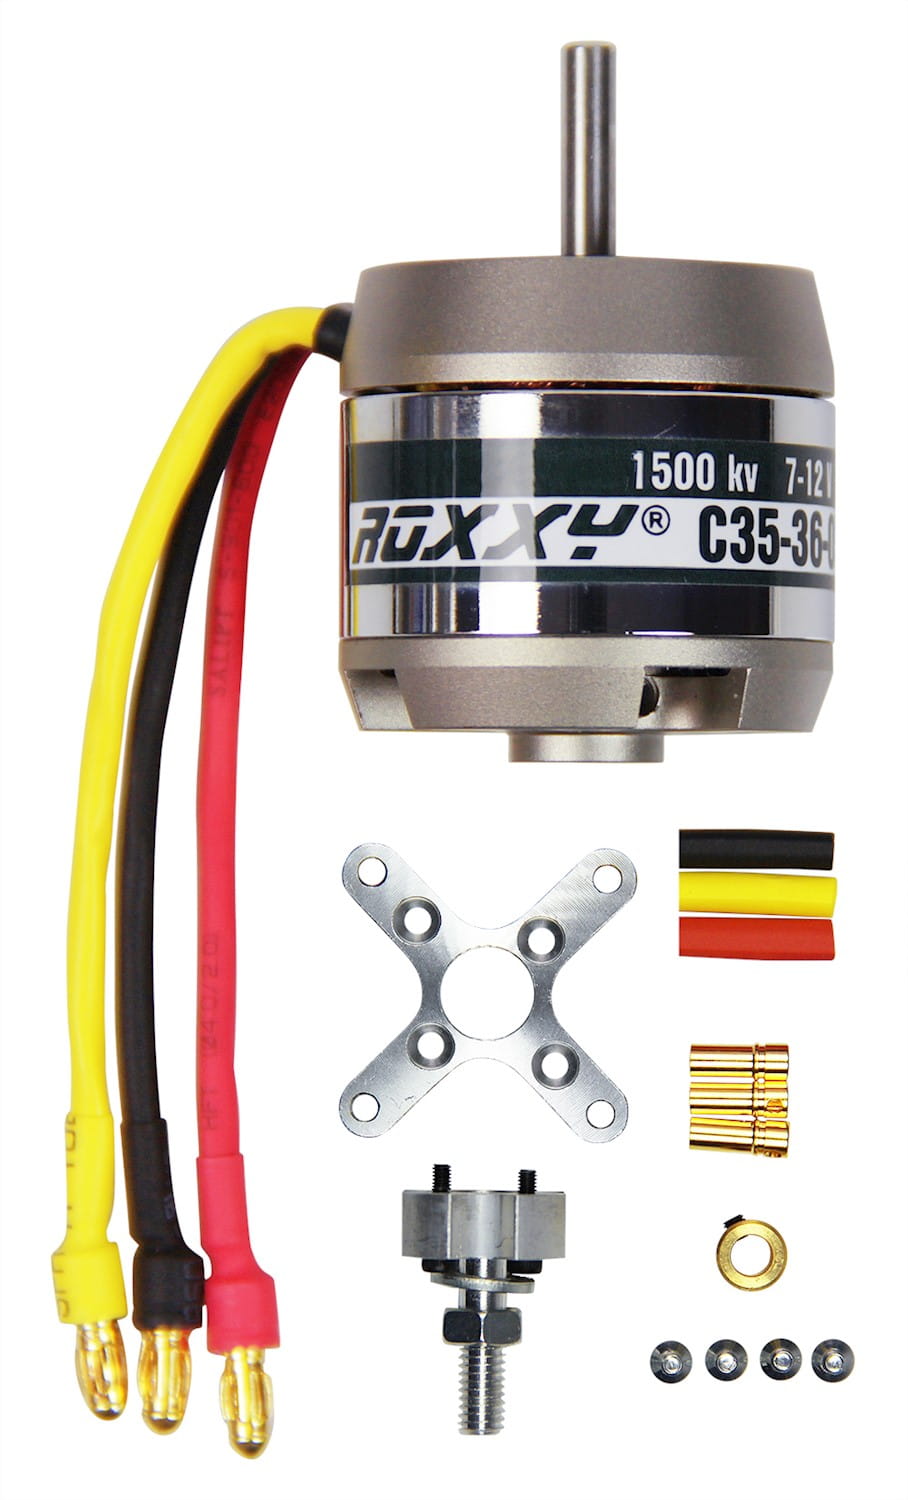 Multiplex ROXXY Brushless Motor BL Outrunner C35-36-1500kV